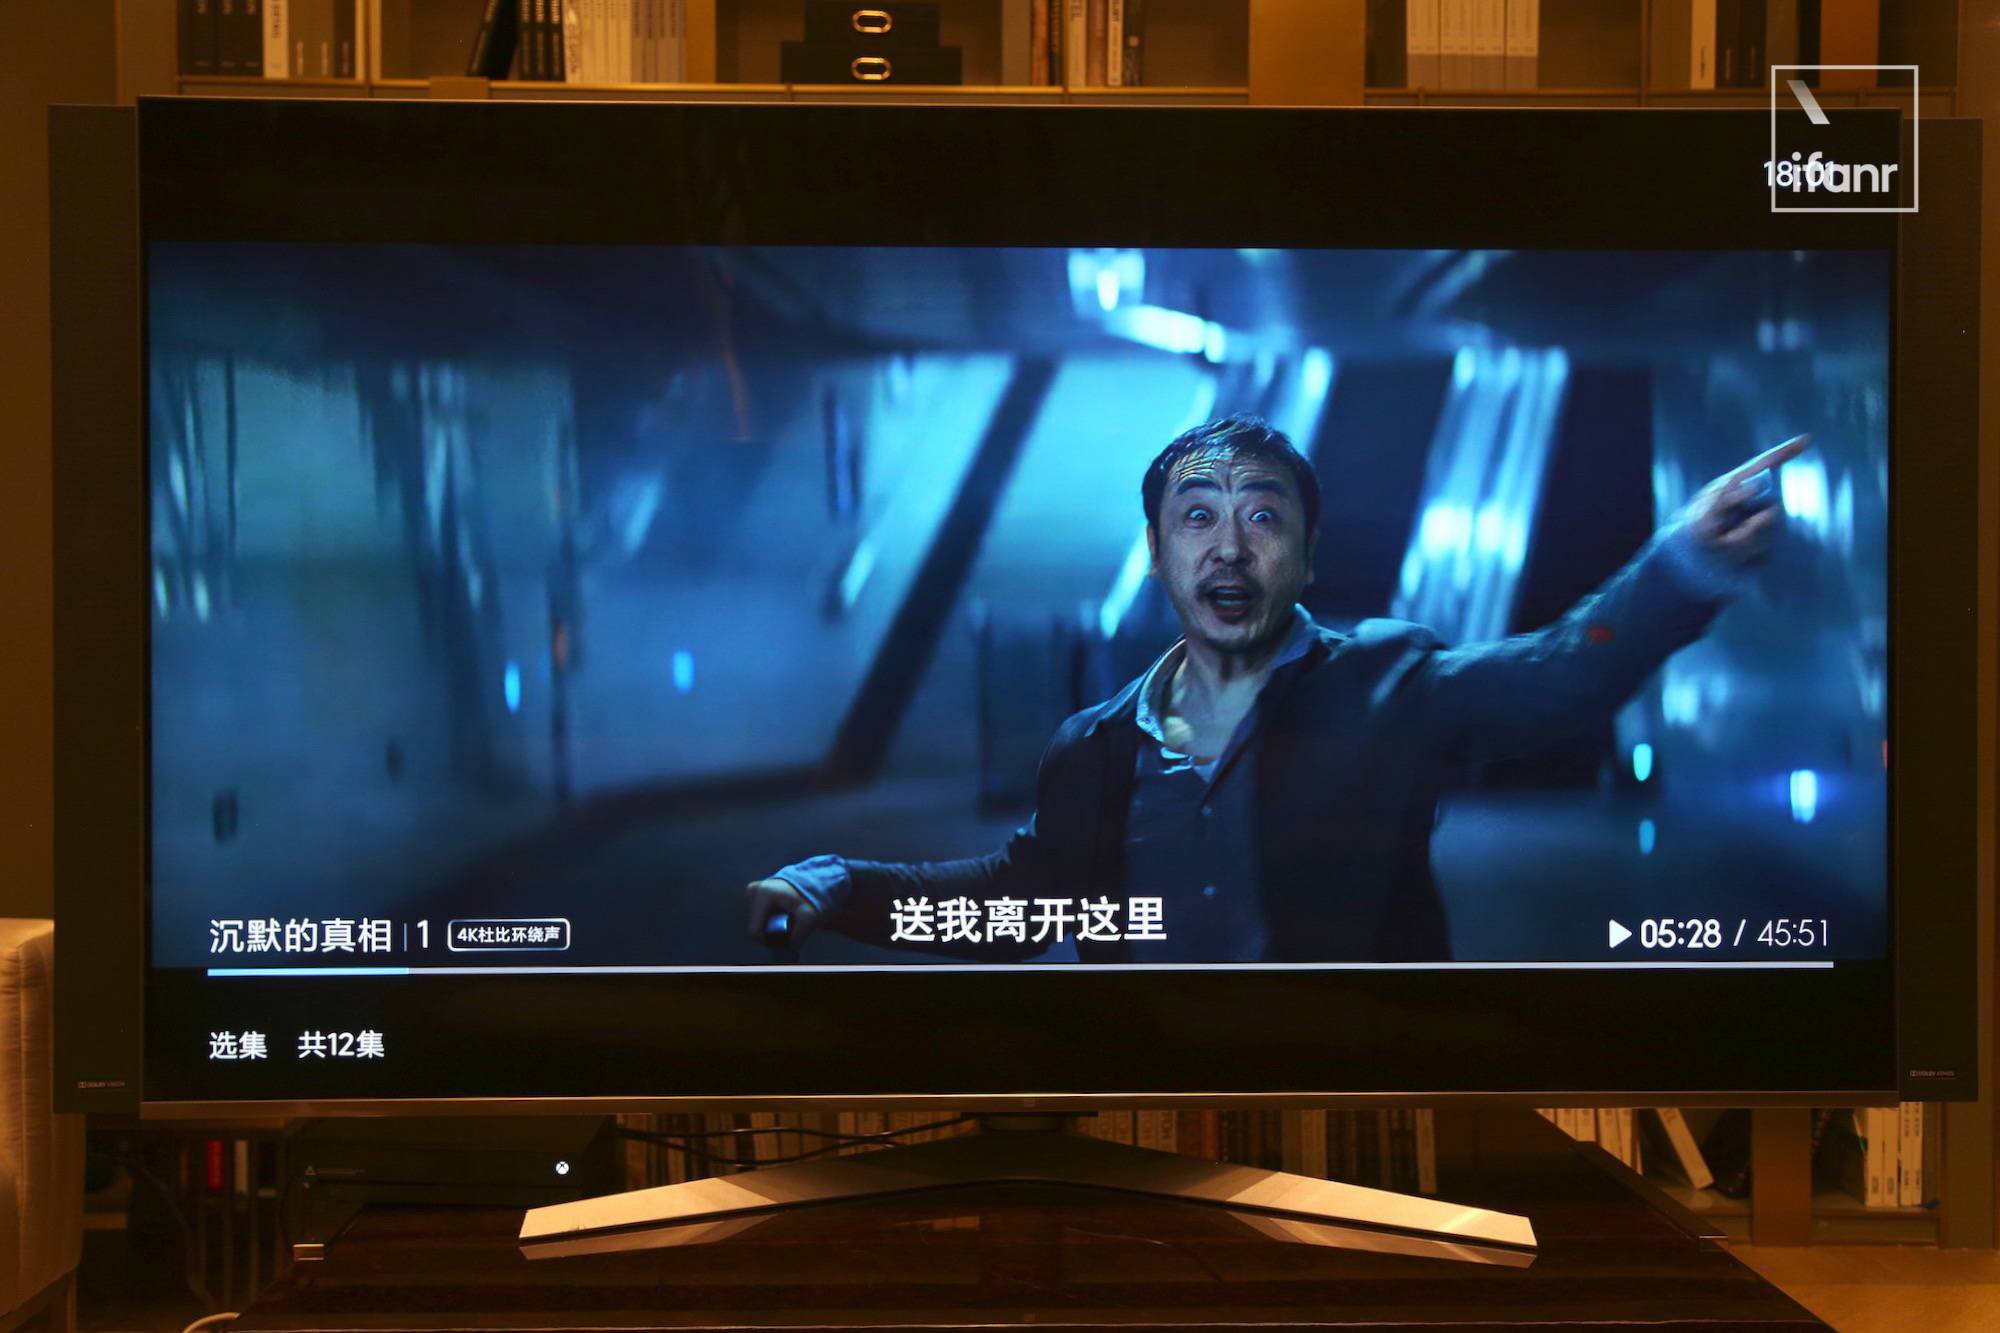 WechatIMG2260 1 - Ho provato la prima TV 8K di Xiaomi sul posto. Come si è comportata la “Super Cup” da 82 pollici?